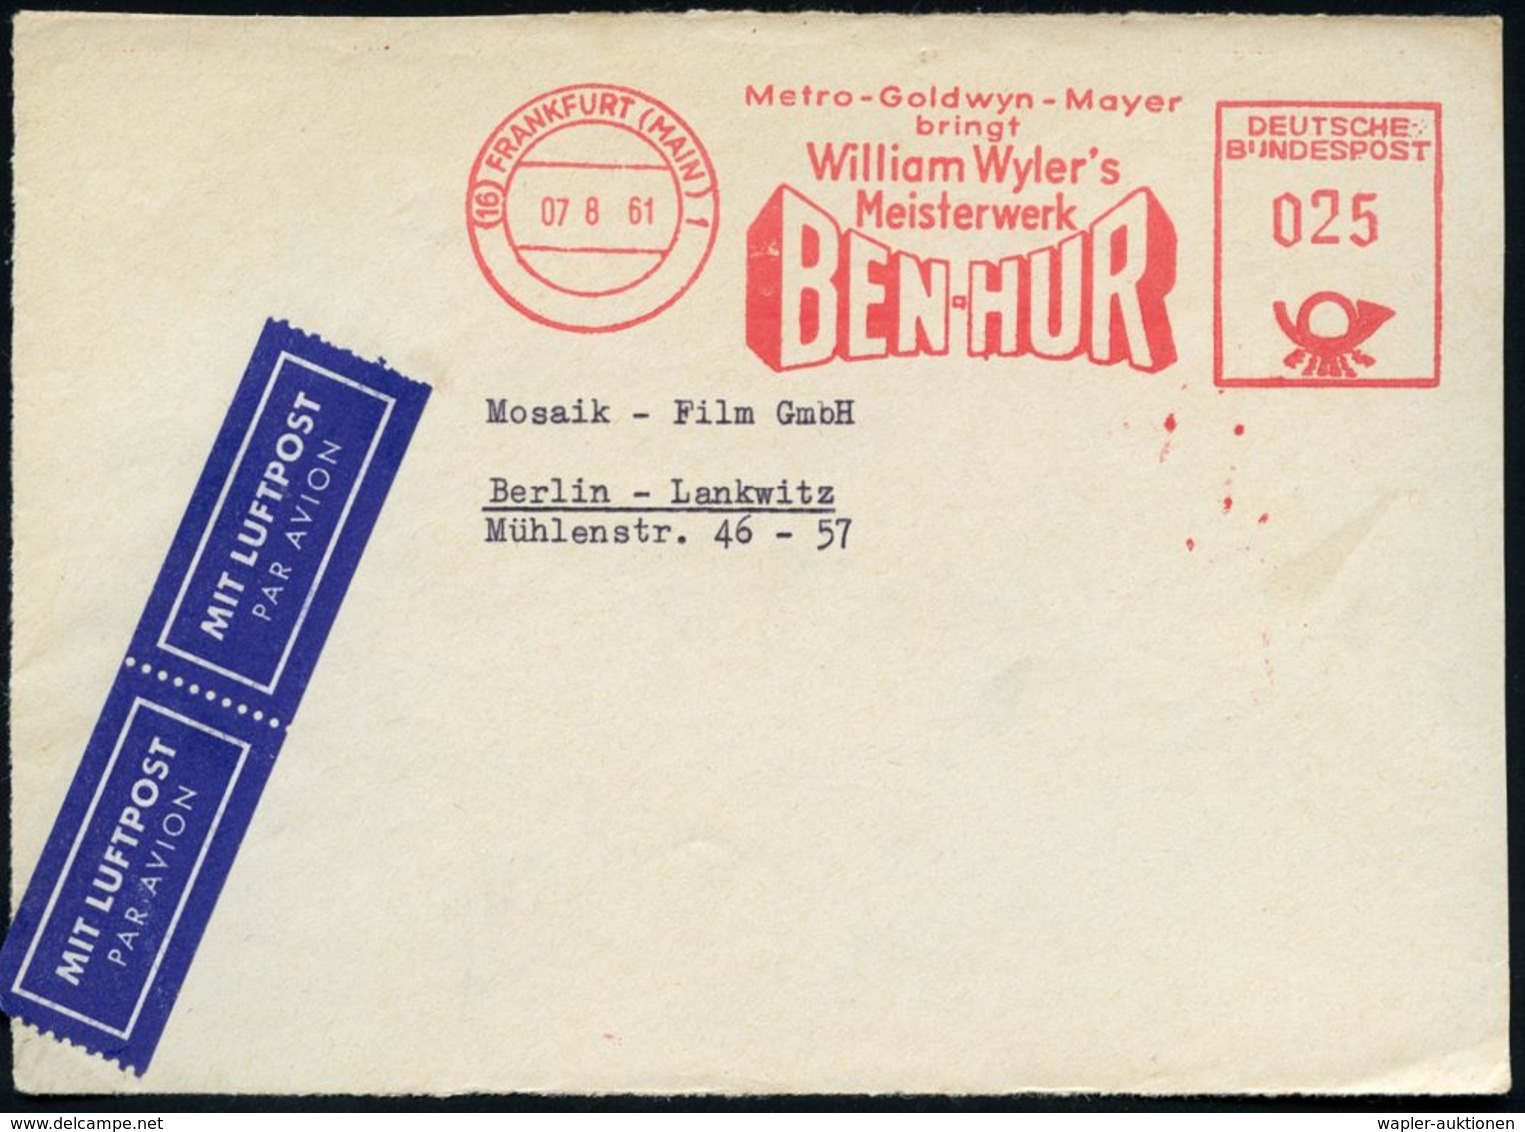 (16) FRANKFURT (MAIN) 1/ Metro-Goldwyn-Mayer/ Bringt/ William Wyler's/ BEN-HUR 1960 (6.12.) Seltener AFS = Film über Die - Archeologie